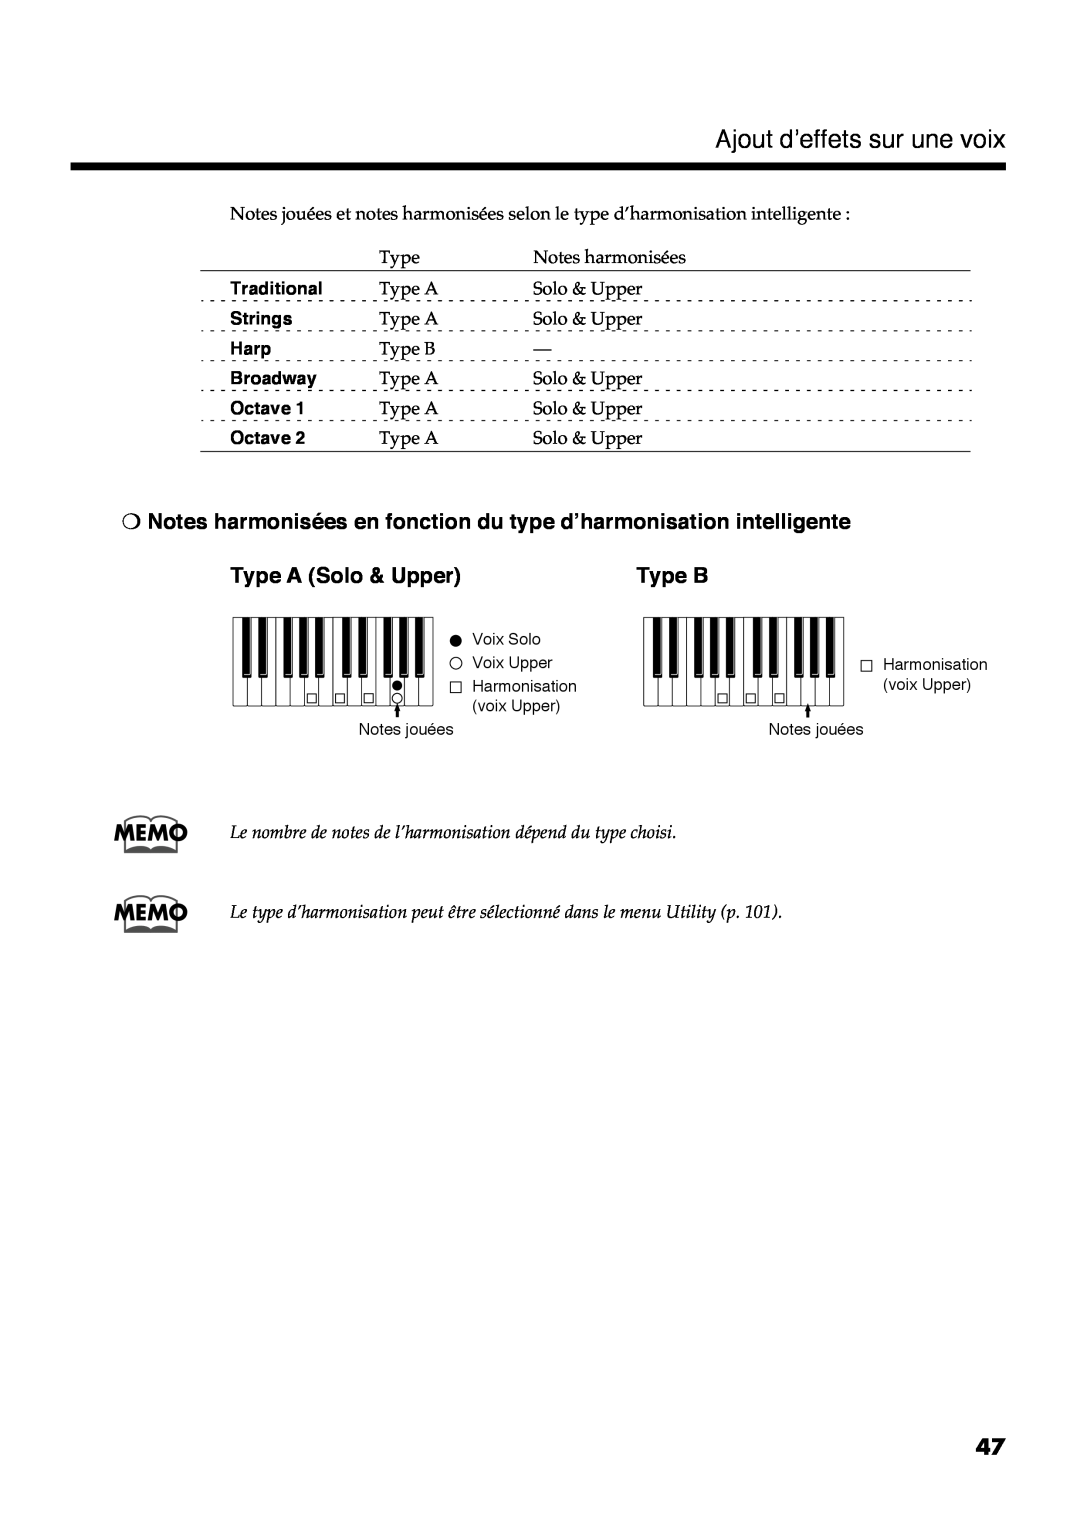 Roland AT30R manual Ajout d’effets sur une voix, Memo, Type B, #+#+8, +& D2D 